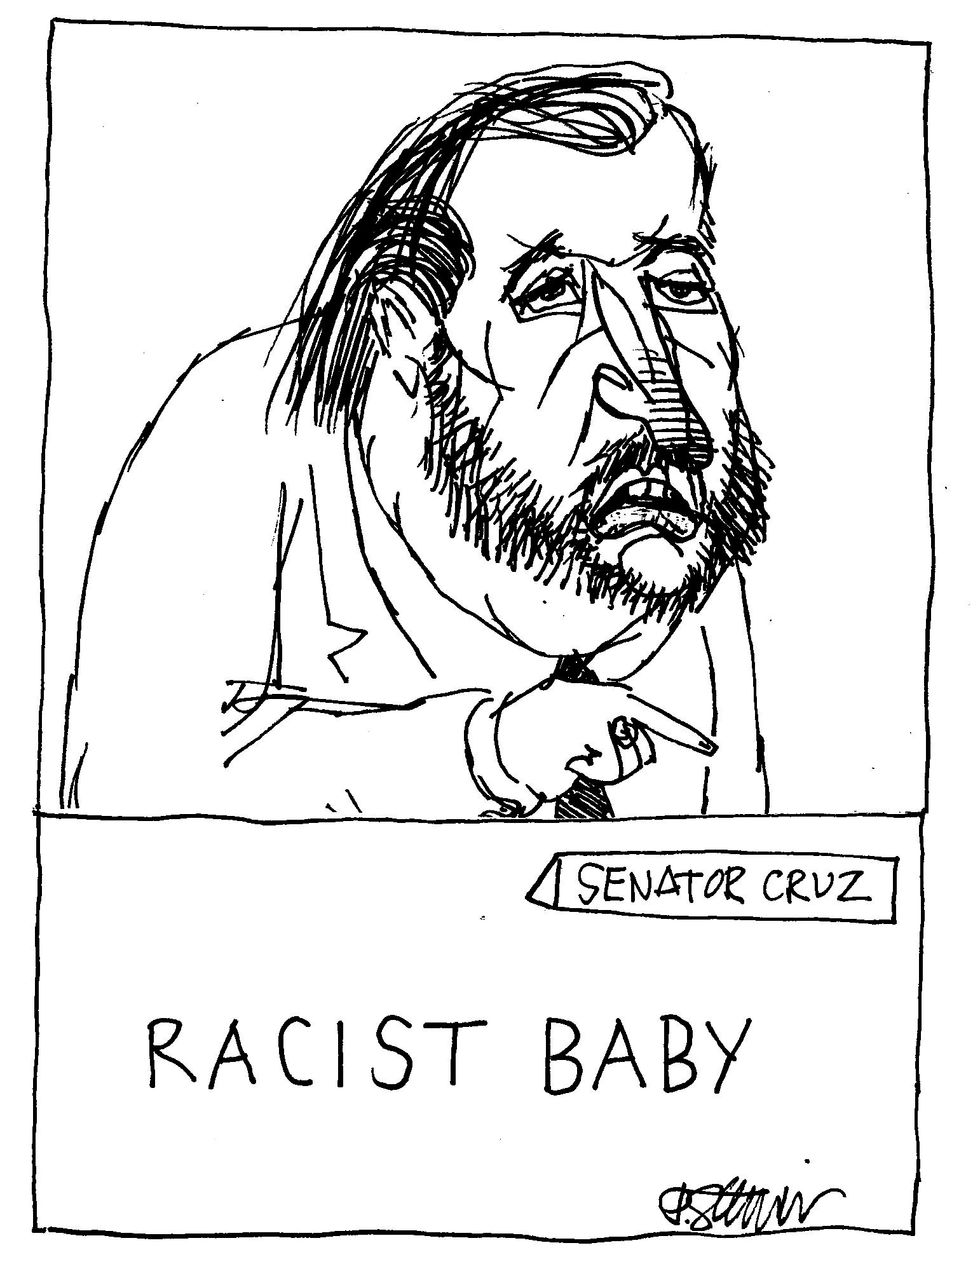 Racist Baby